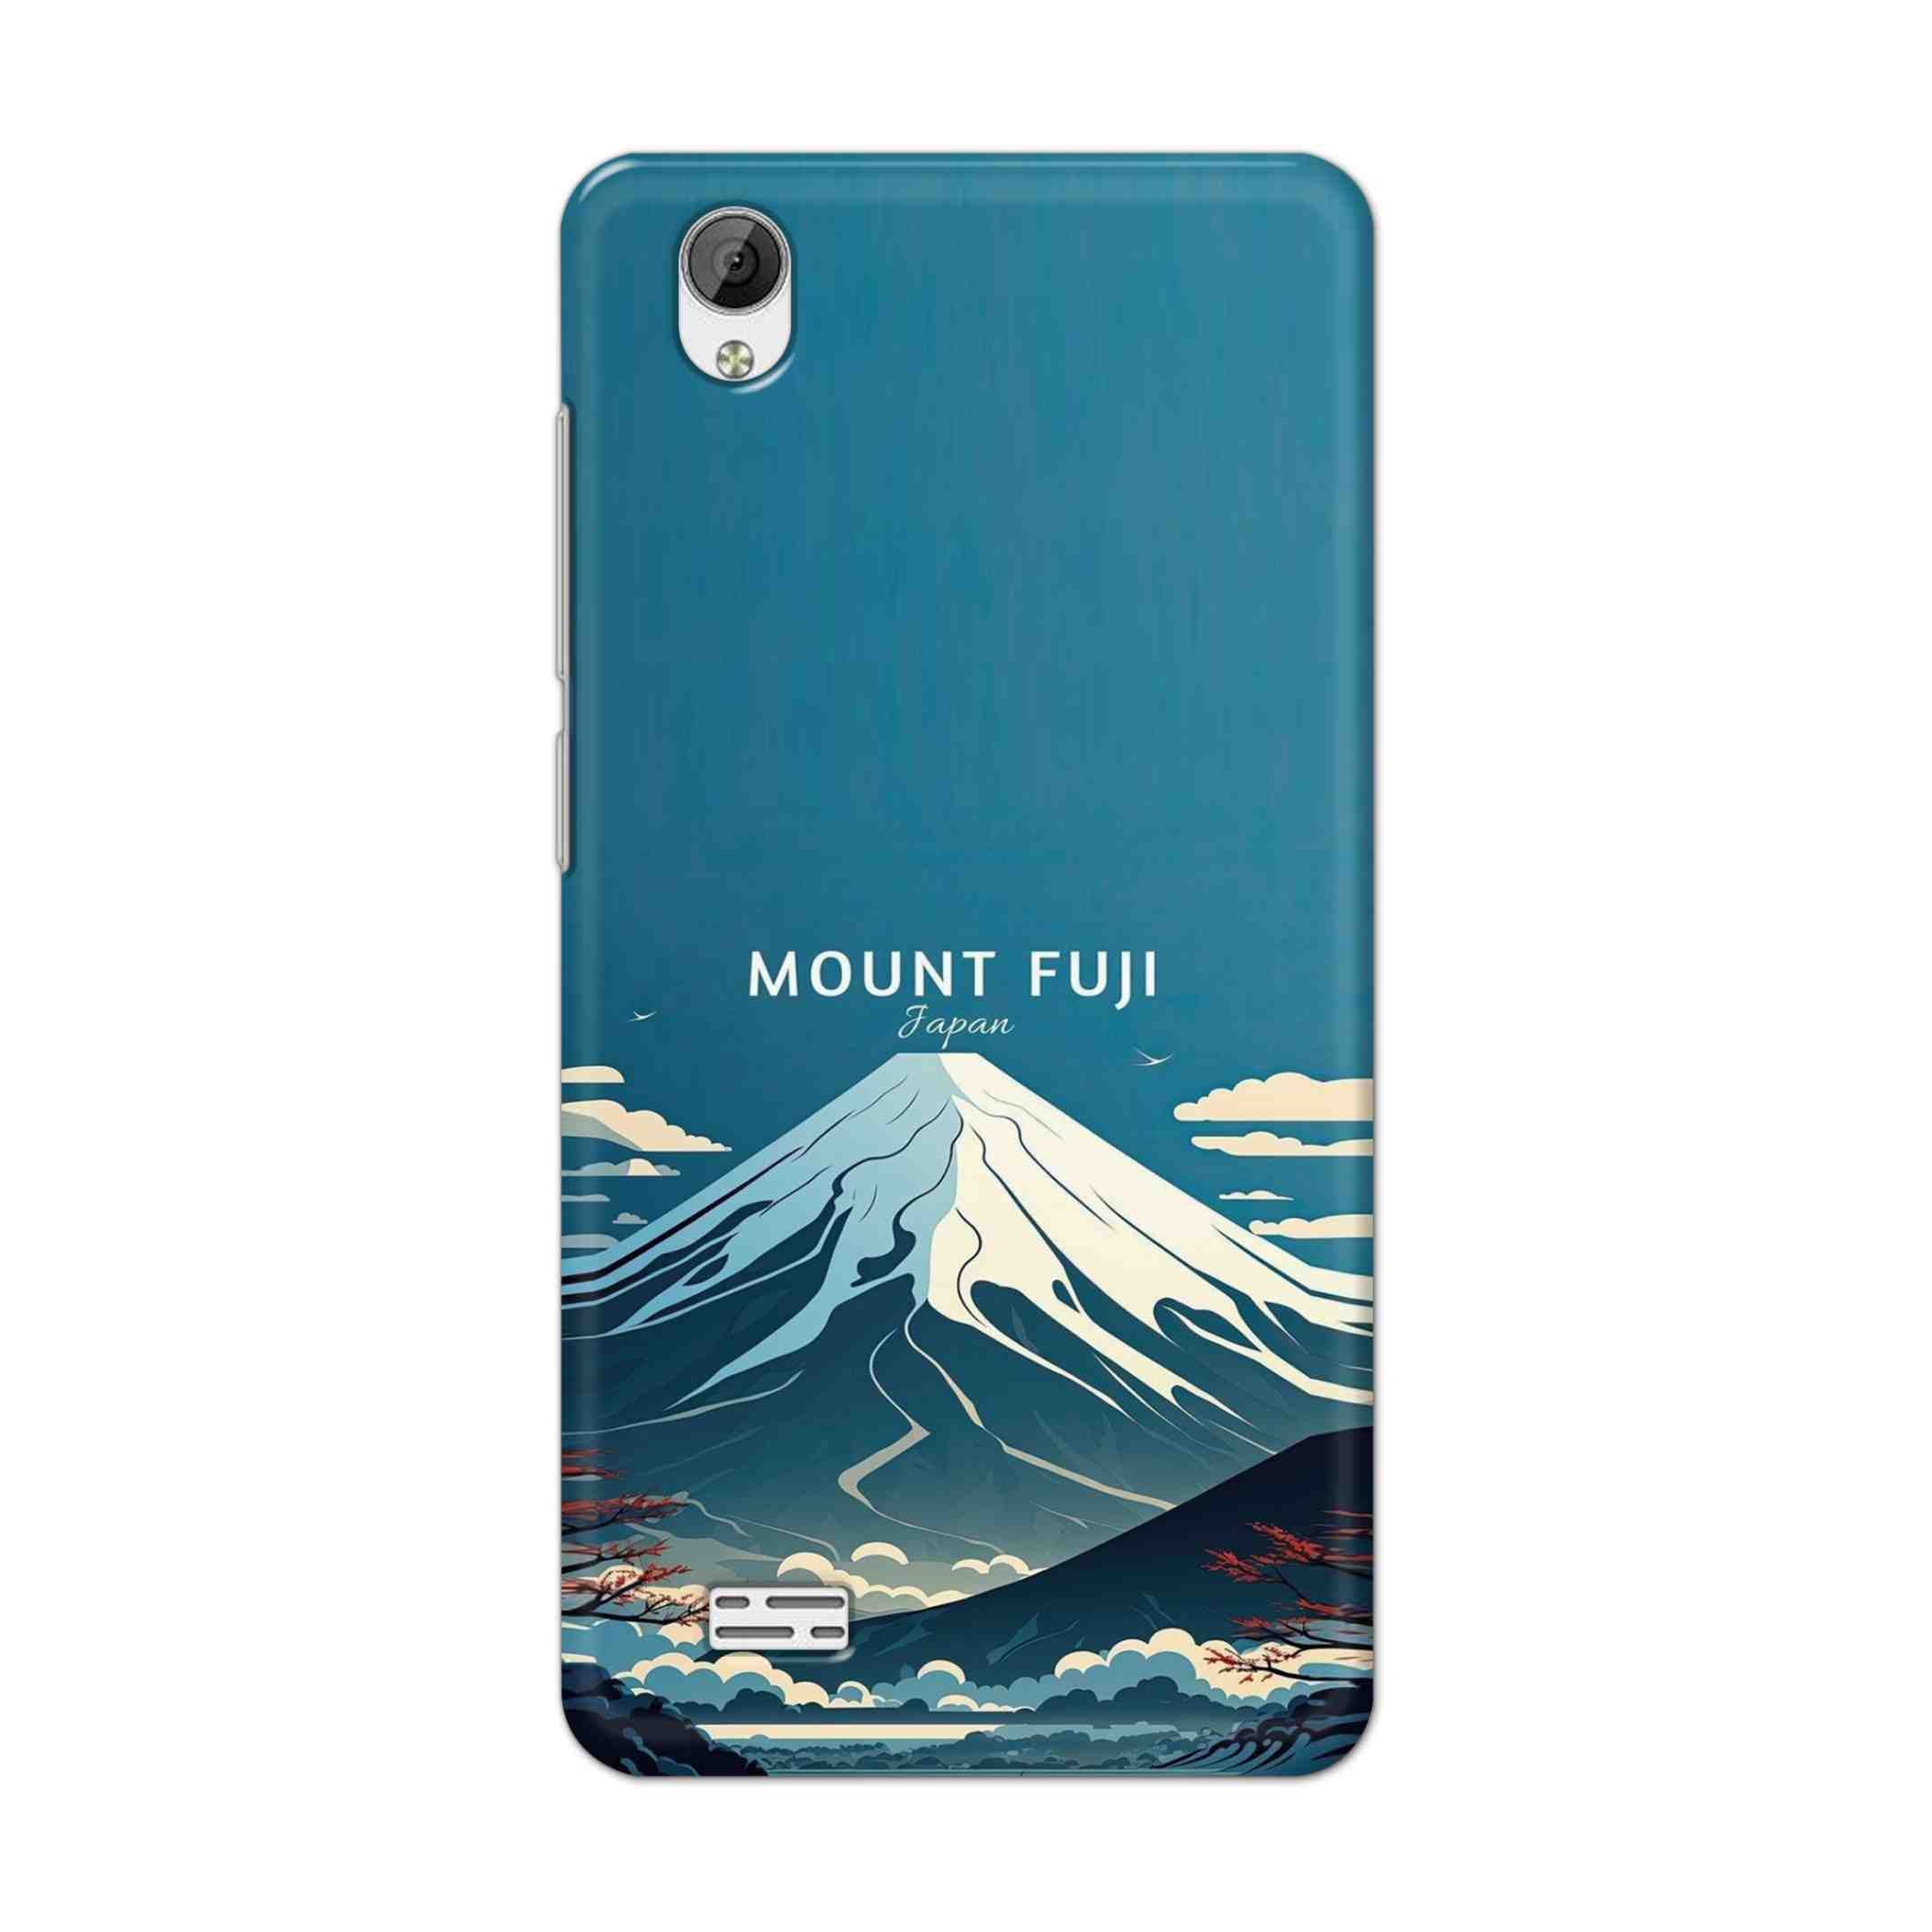 Buy Mount Fuji Hard Back Mobile Phone Case Cover For Vivo Y31 Online